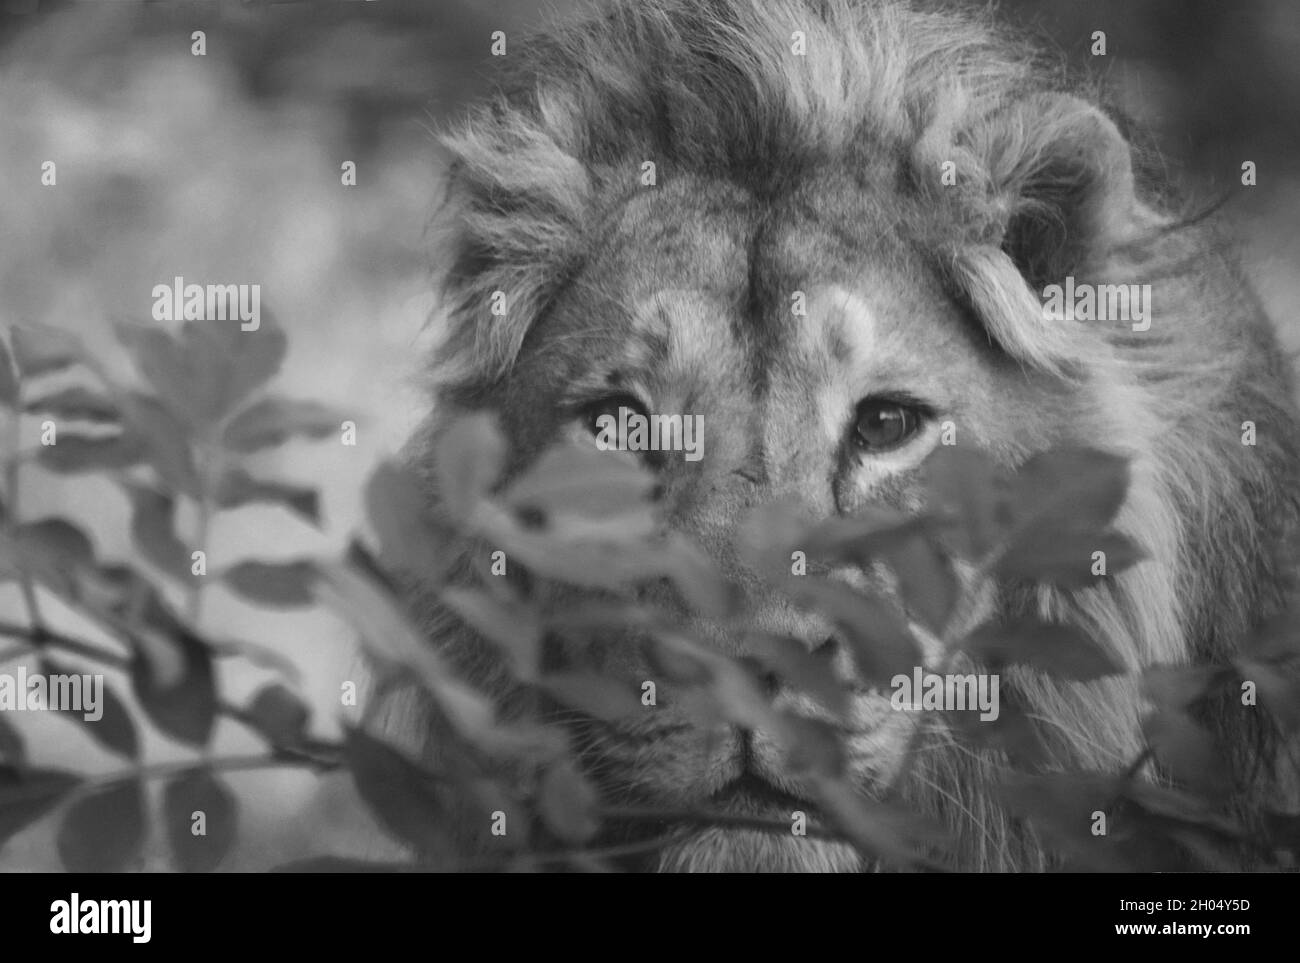 Ein Schwarz-Weiß-Nahaufnahme des Gesichts und Kopfes eines männlichen Löwen, dessen Augen klar im Fokus stehen und durch grüne Büsche direkt in die Kamera starren. Stockfoto